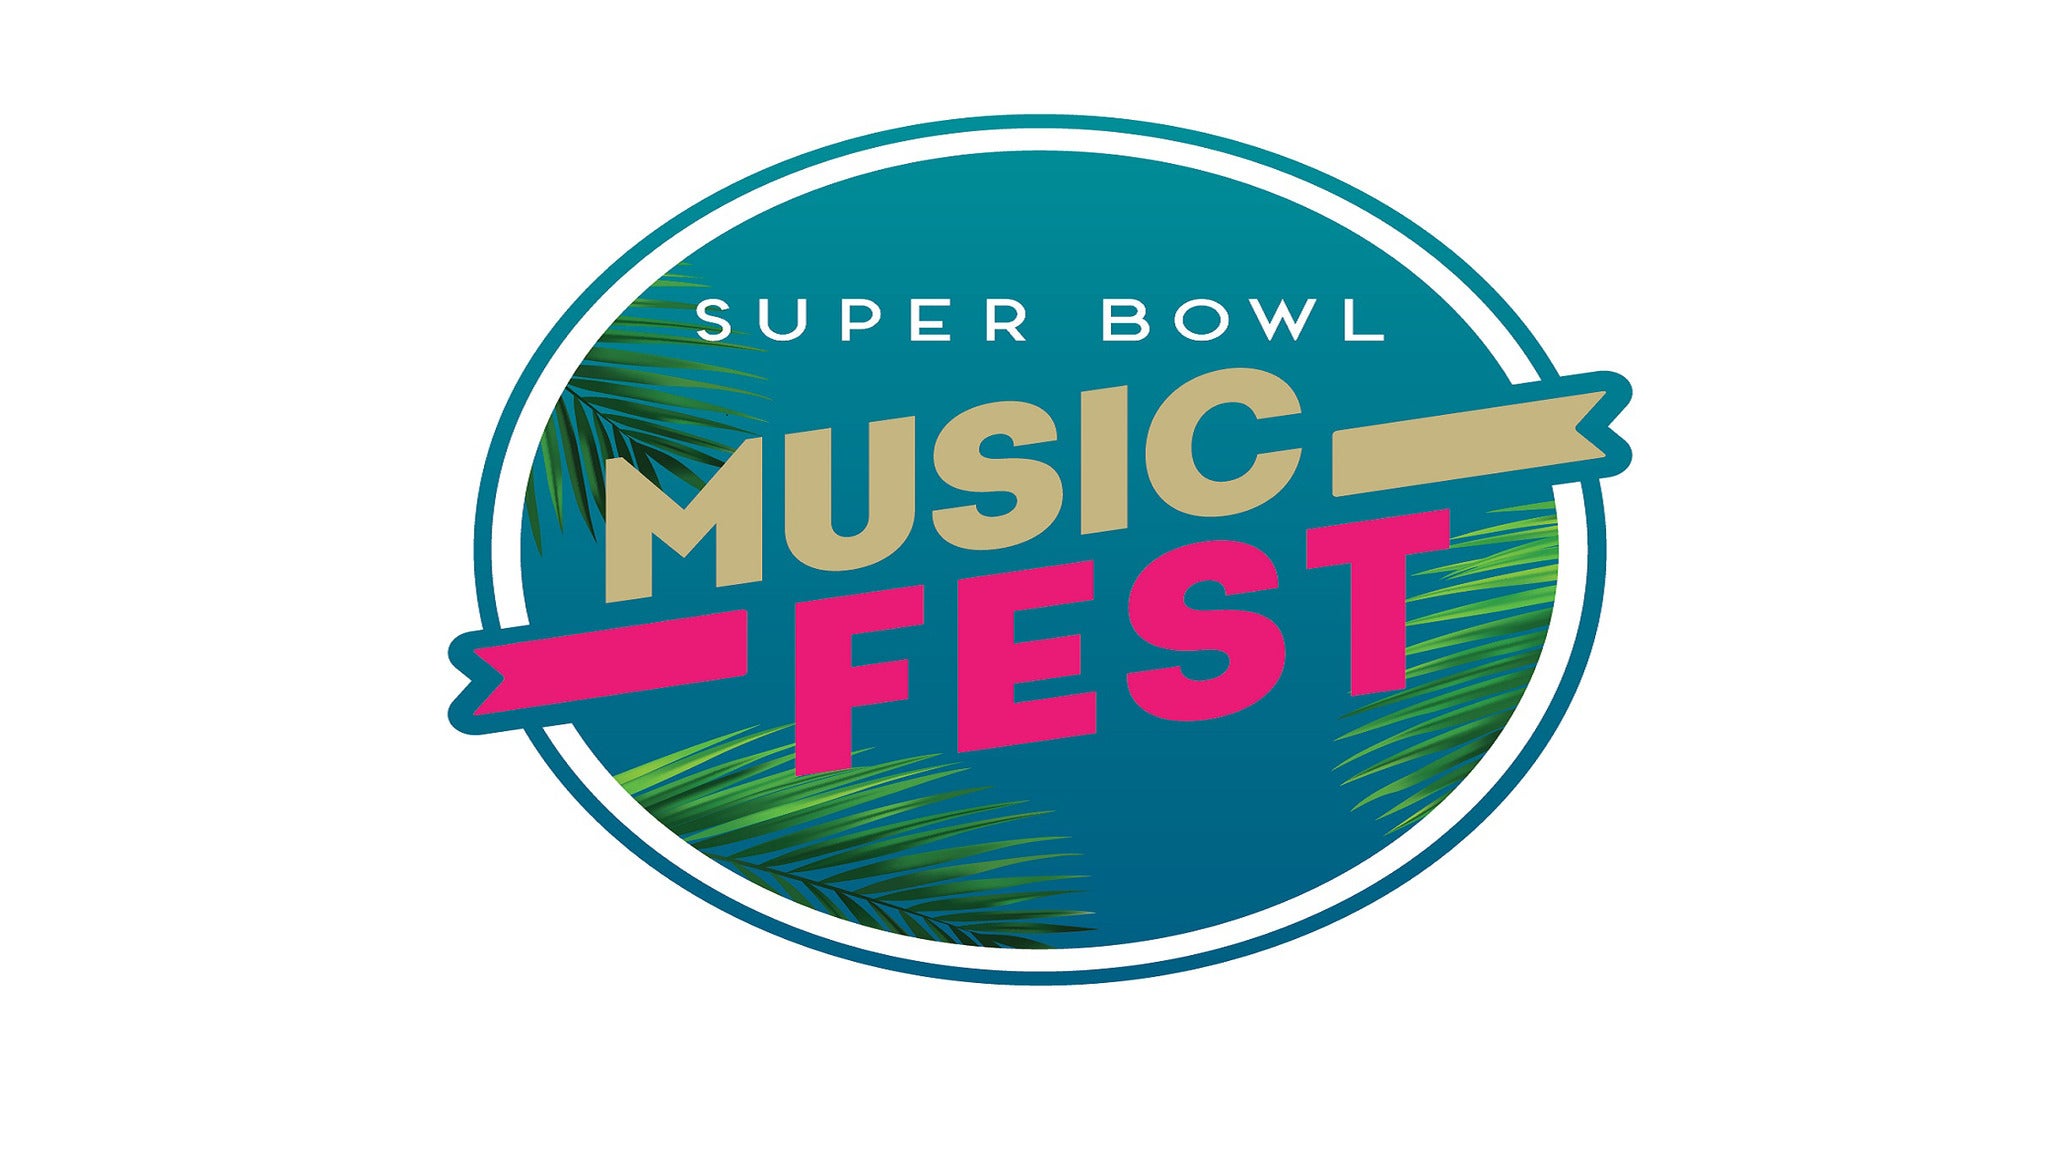 Bud Light Super Bowl Music Fest Tickets, 2021 Concert Tour Dates